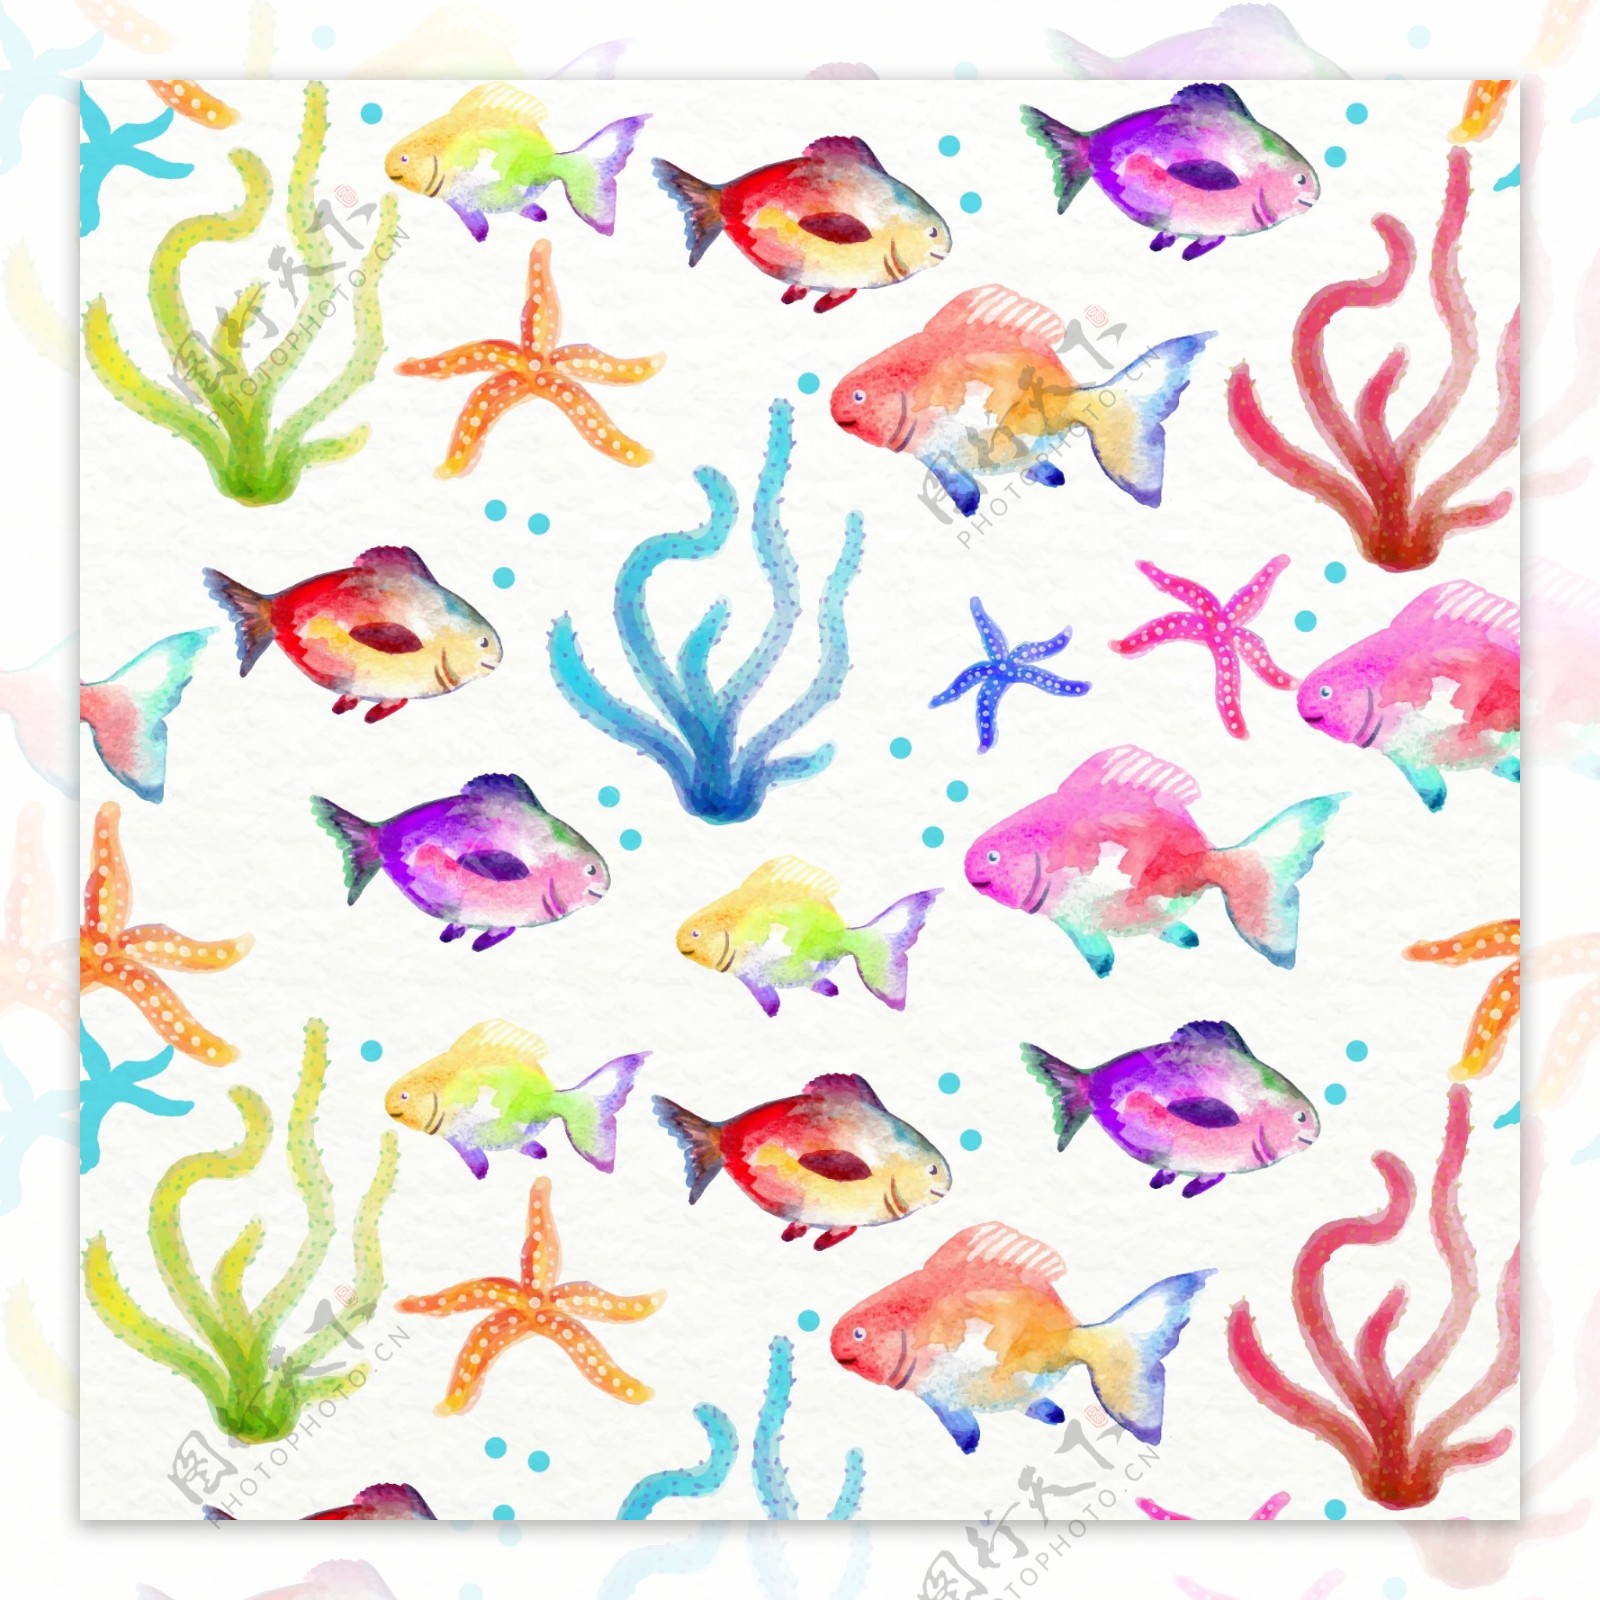 水彩绘水草海星和鱼无缝背景